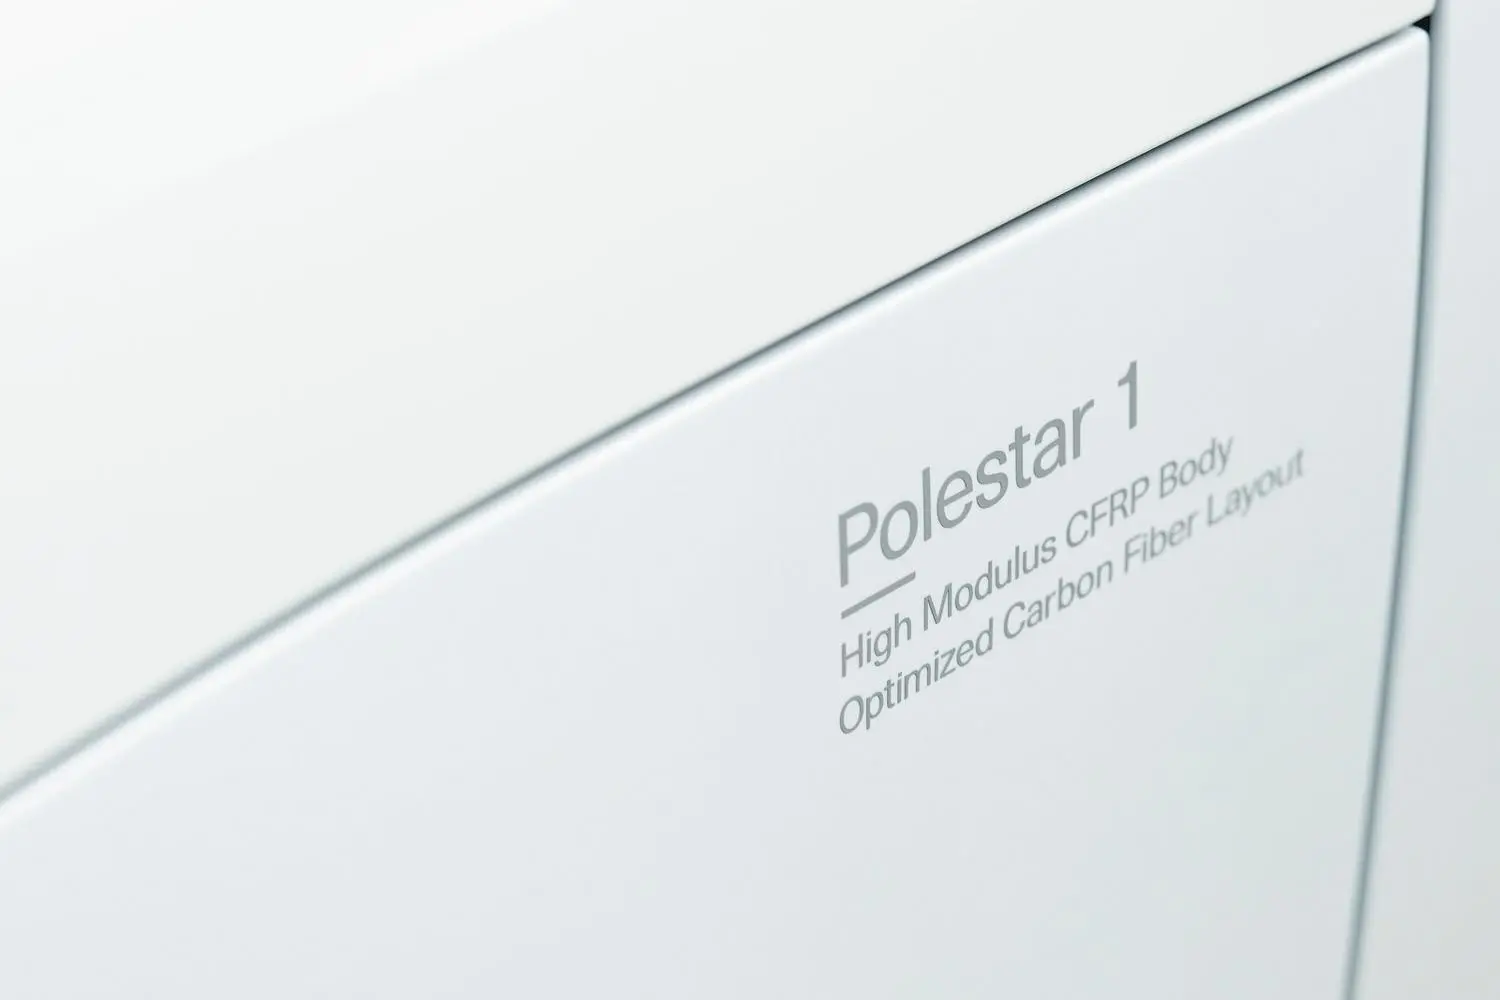 Polestar 1